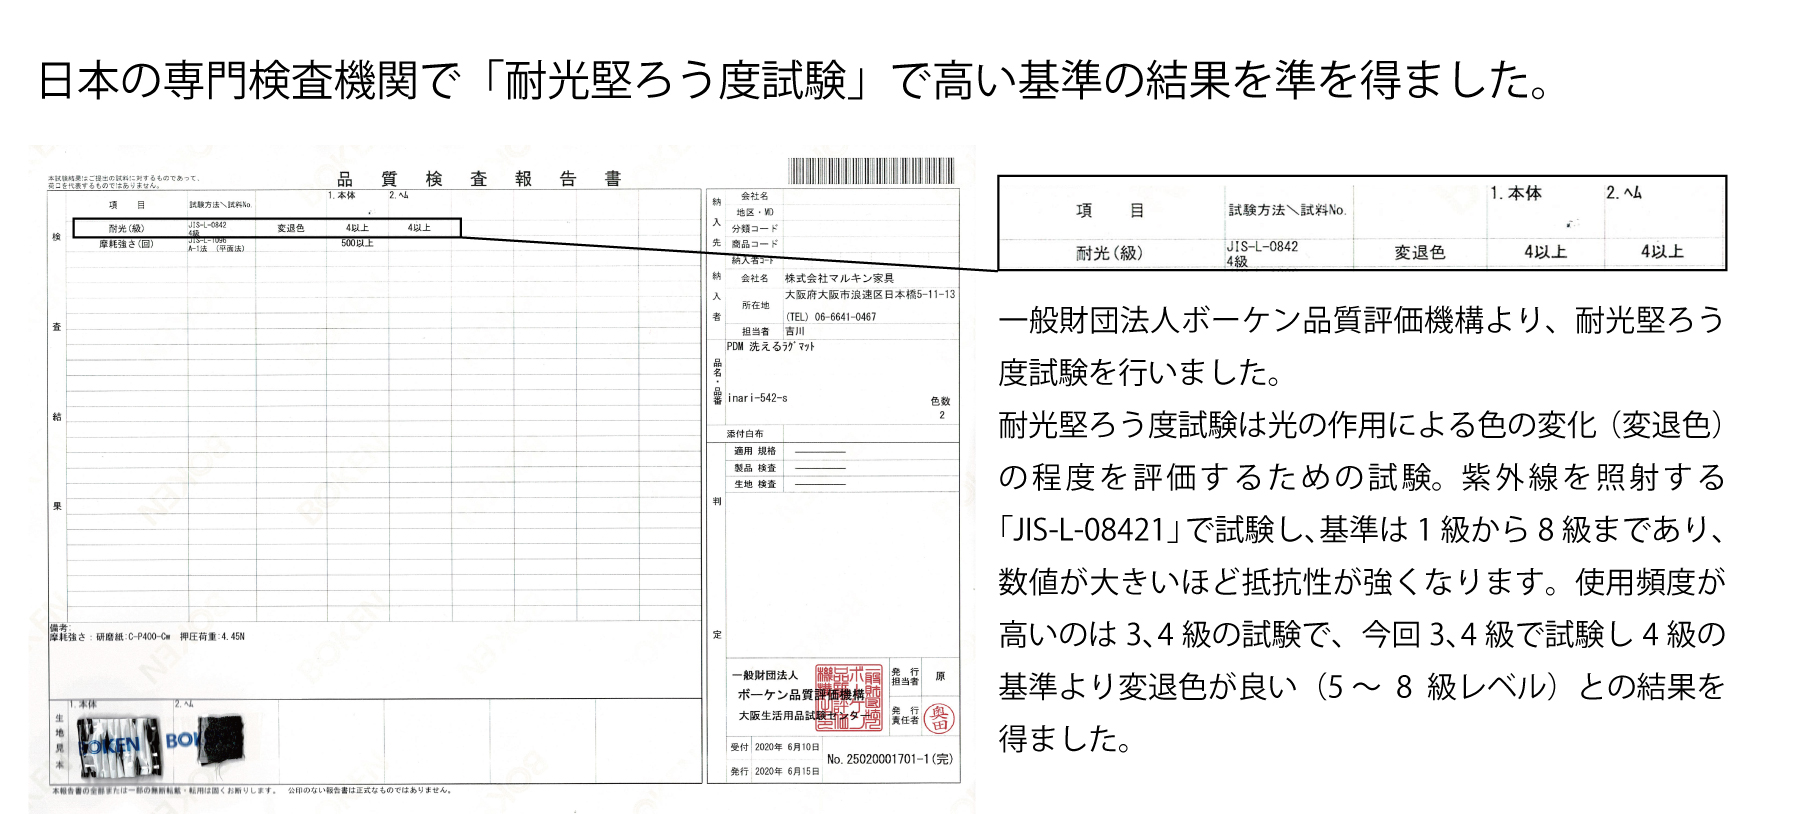 日本の専門検査機関の耐光堅ろう度試験で高い水準